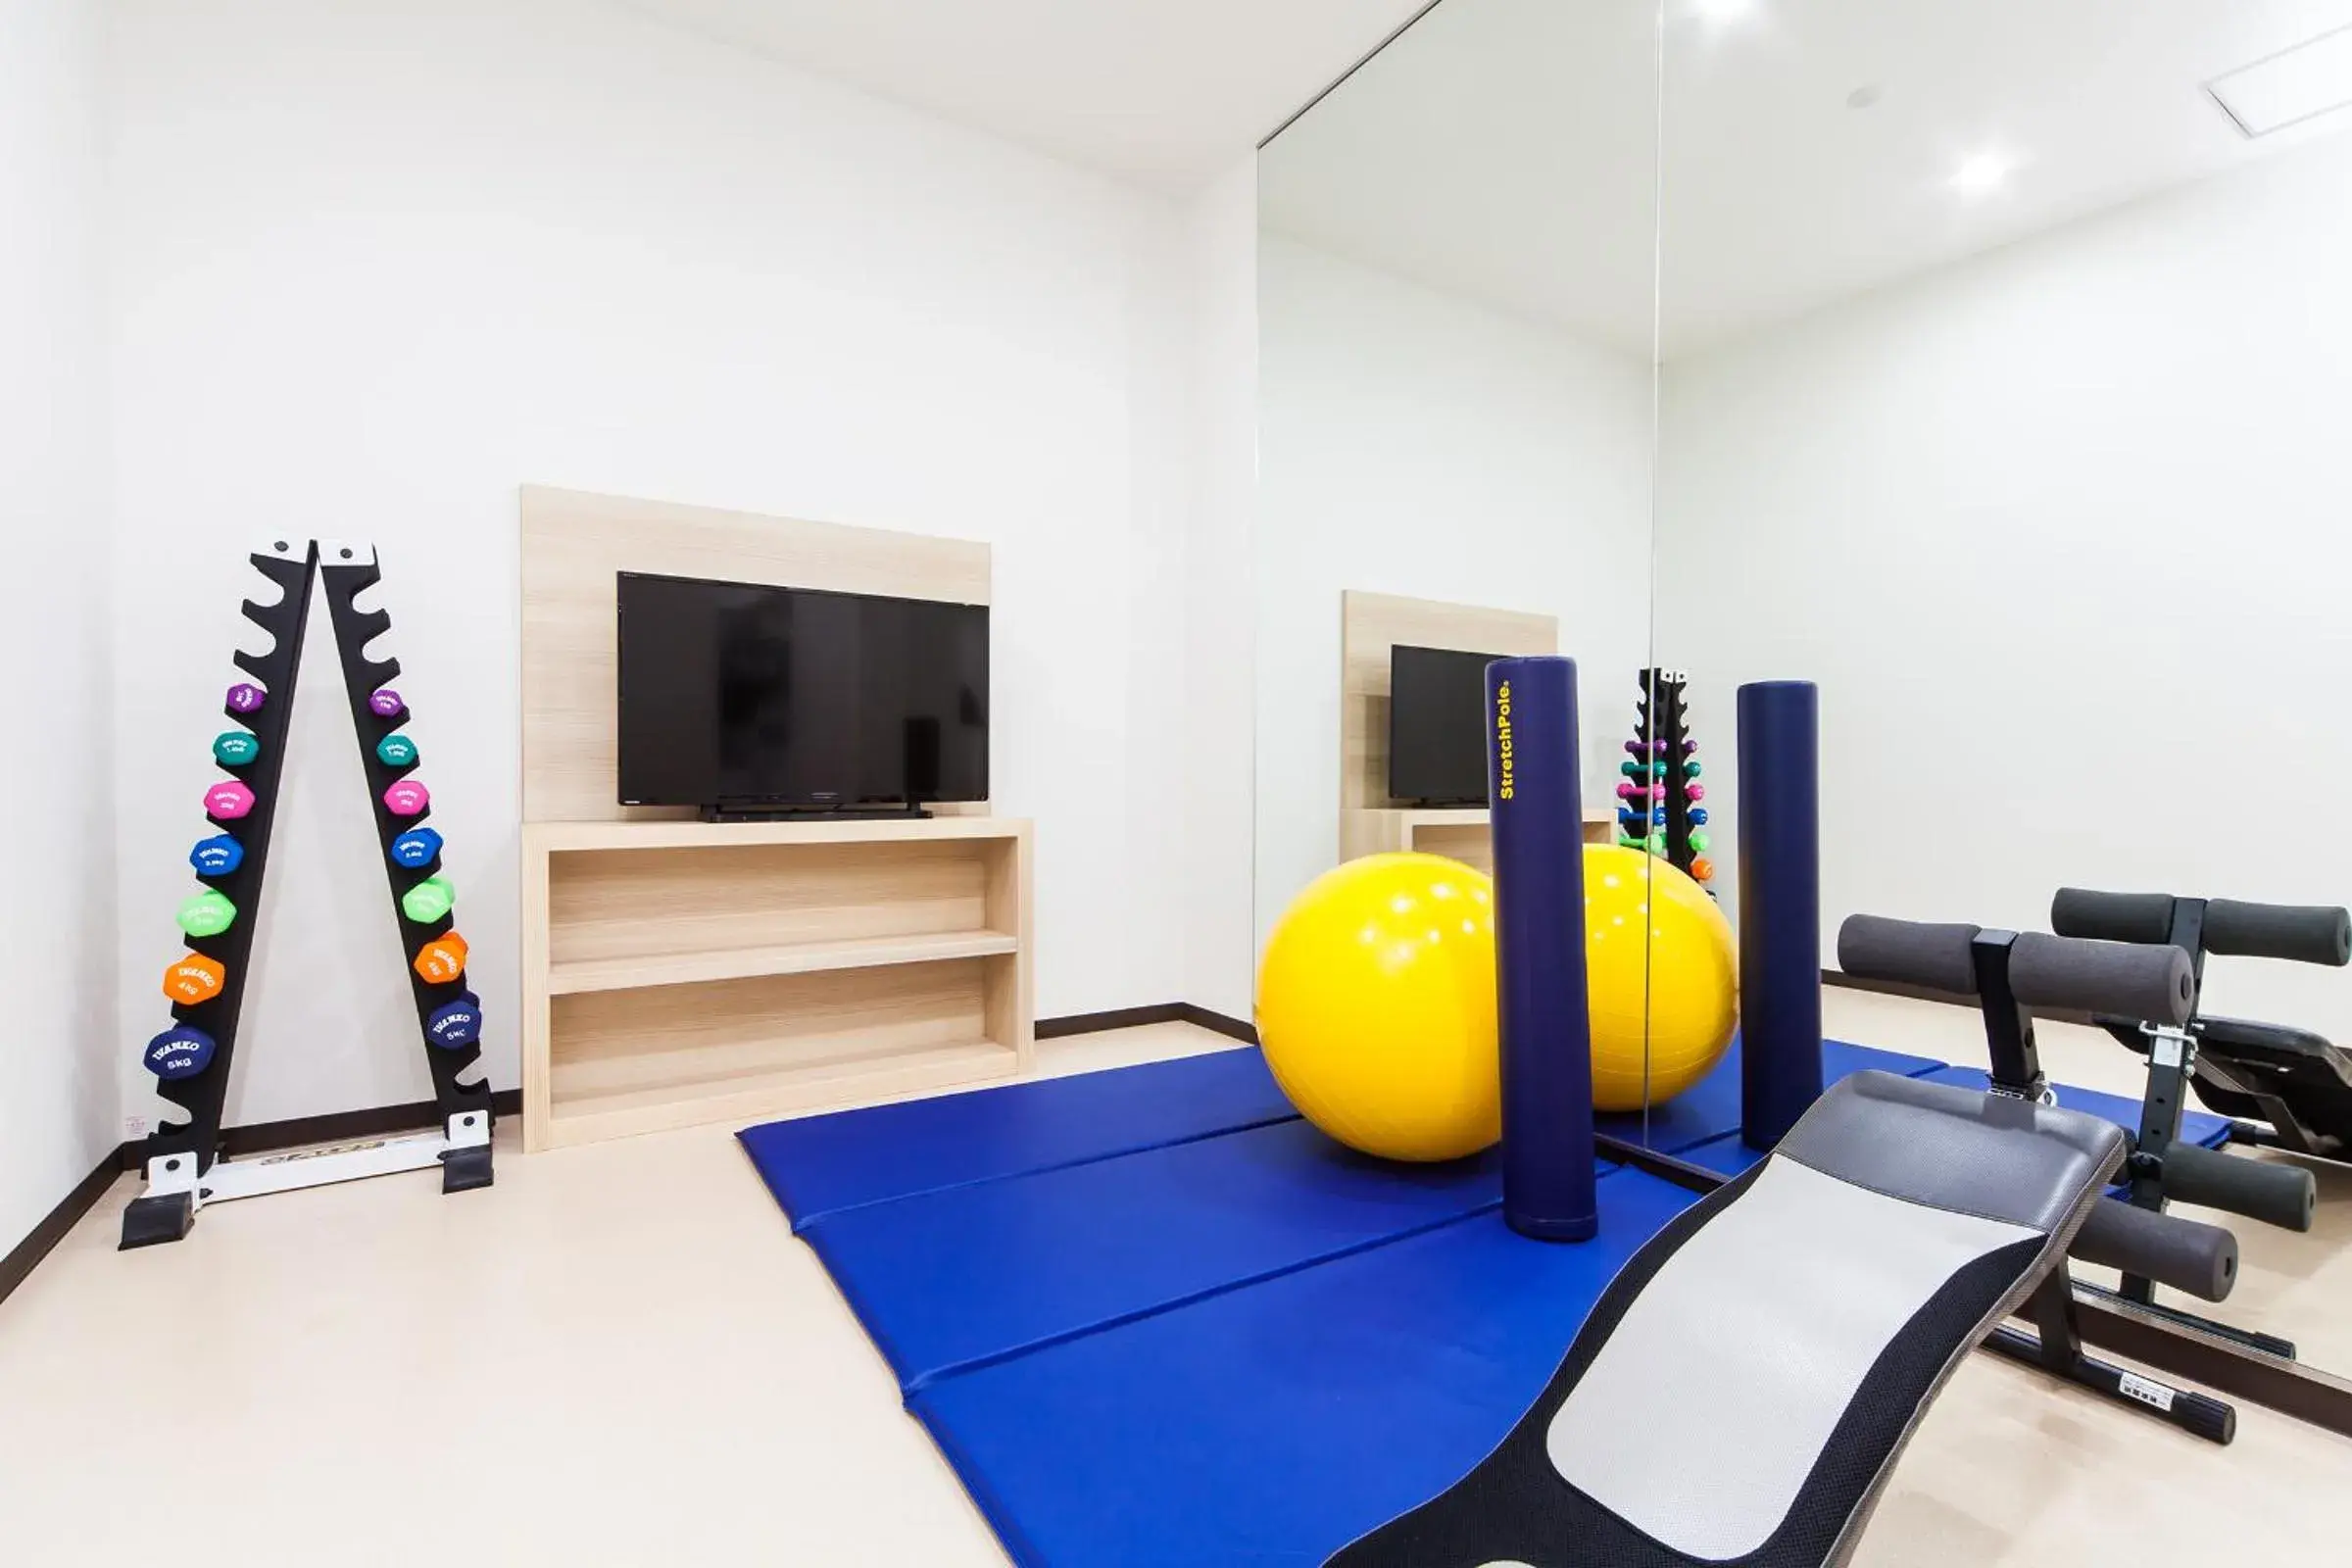 Fitness centre/facilities, Fitness Center/Facilities in Hotel Mystays Haneda